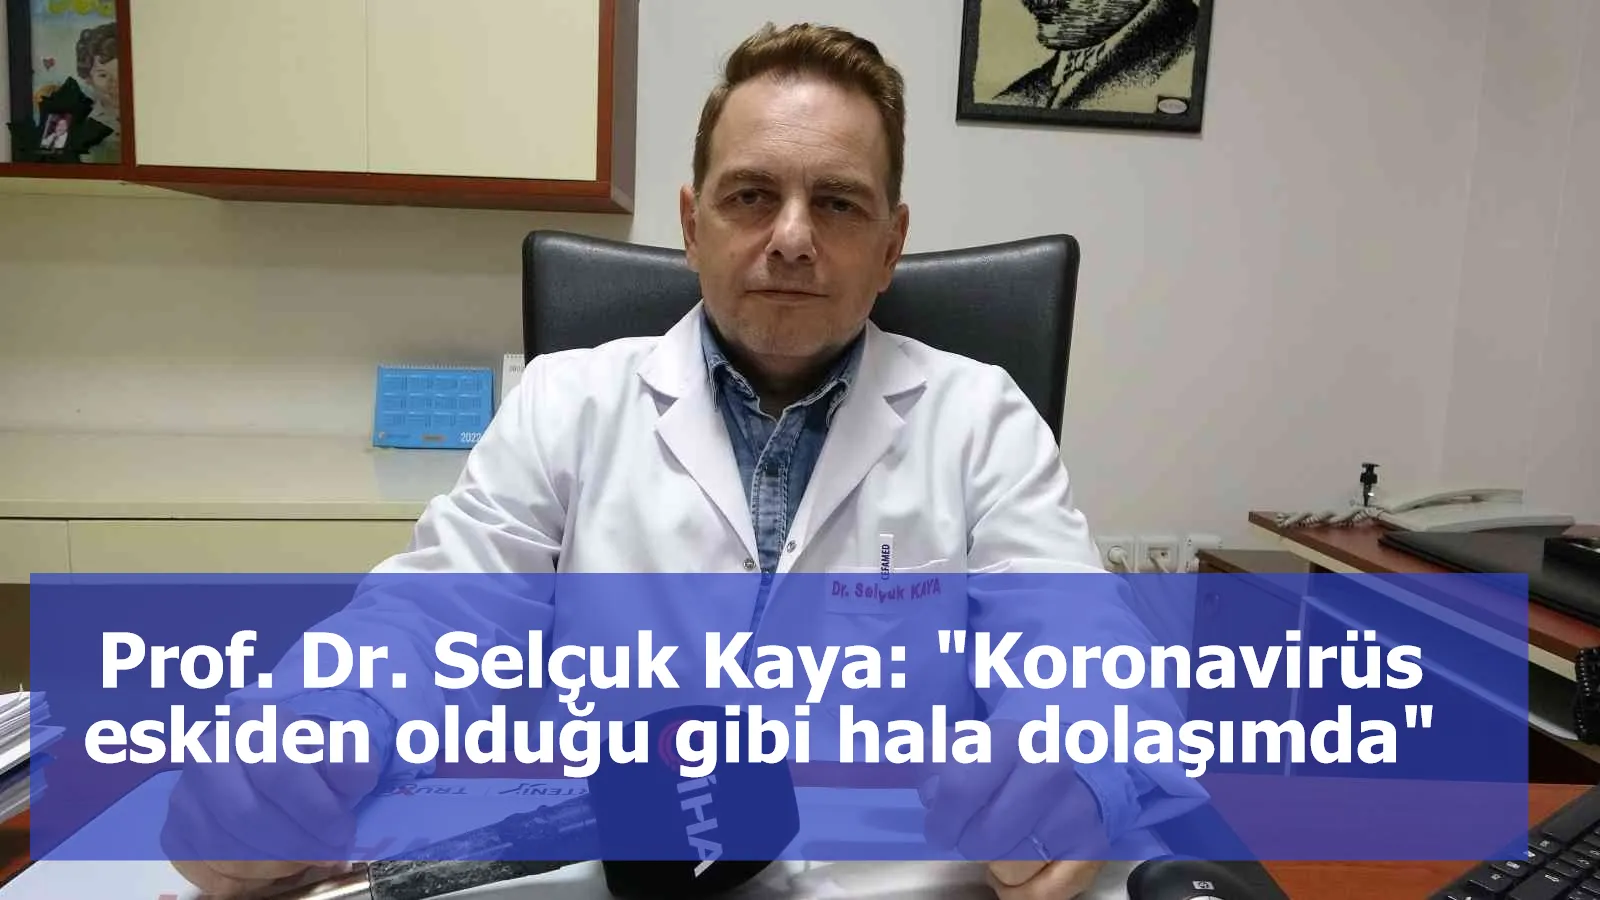 Prof. Dr. Selçuk Kaya: “Korona virüs eskiden olduğu gibi hala dolaşımda, sirküle olmaya devam ediyor”